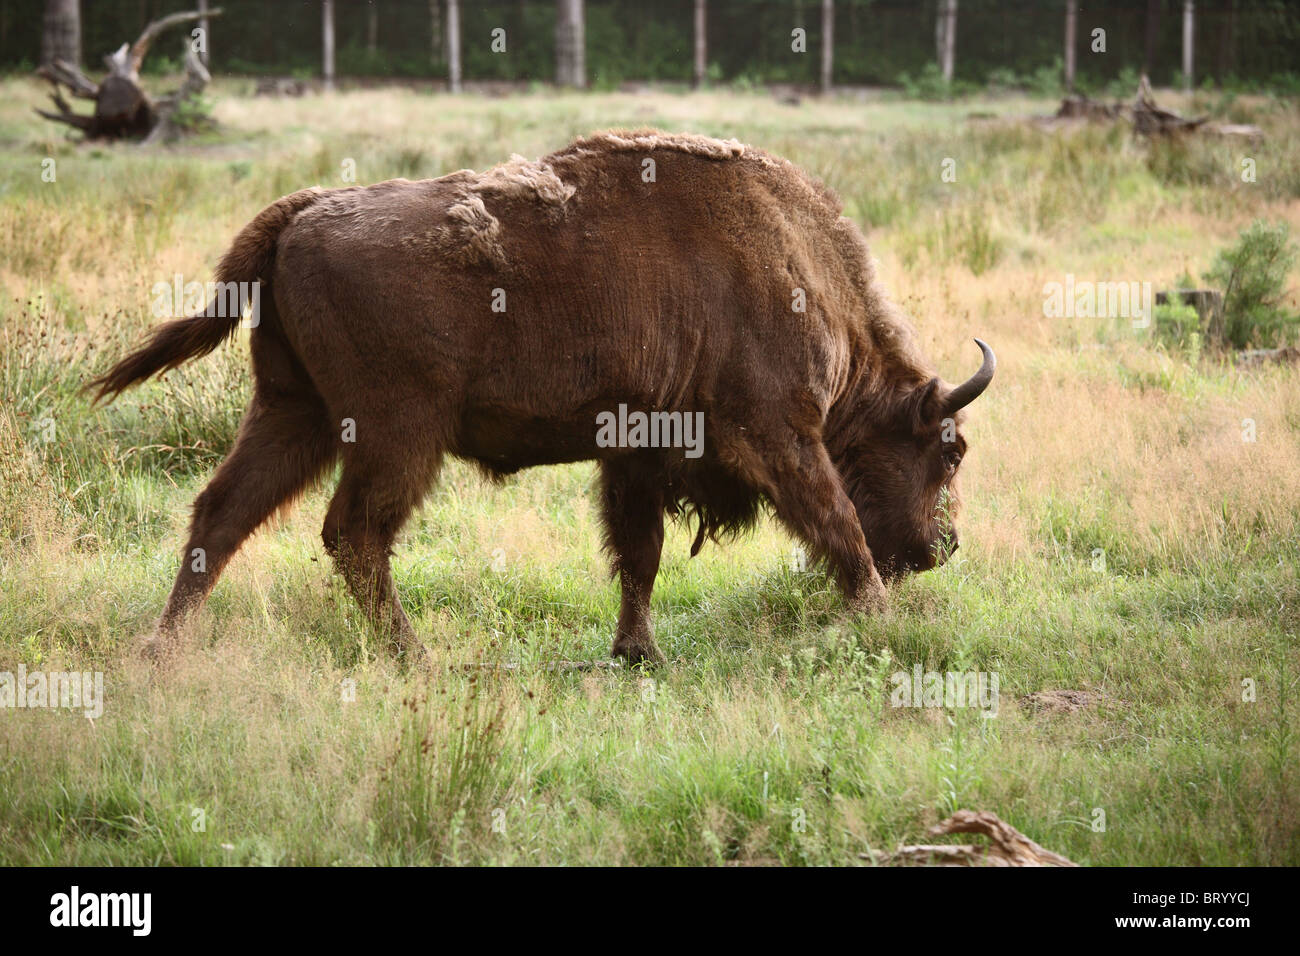 Un bison dans Belavezhskaya Pushcha, Kamjanjuki, Bélarus Banque D'Images